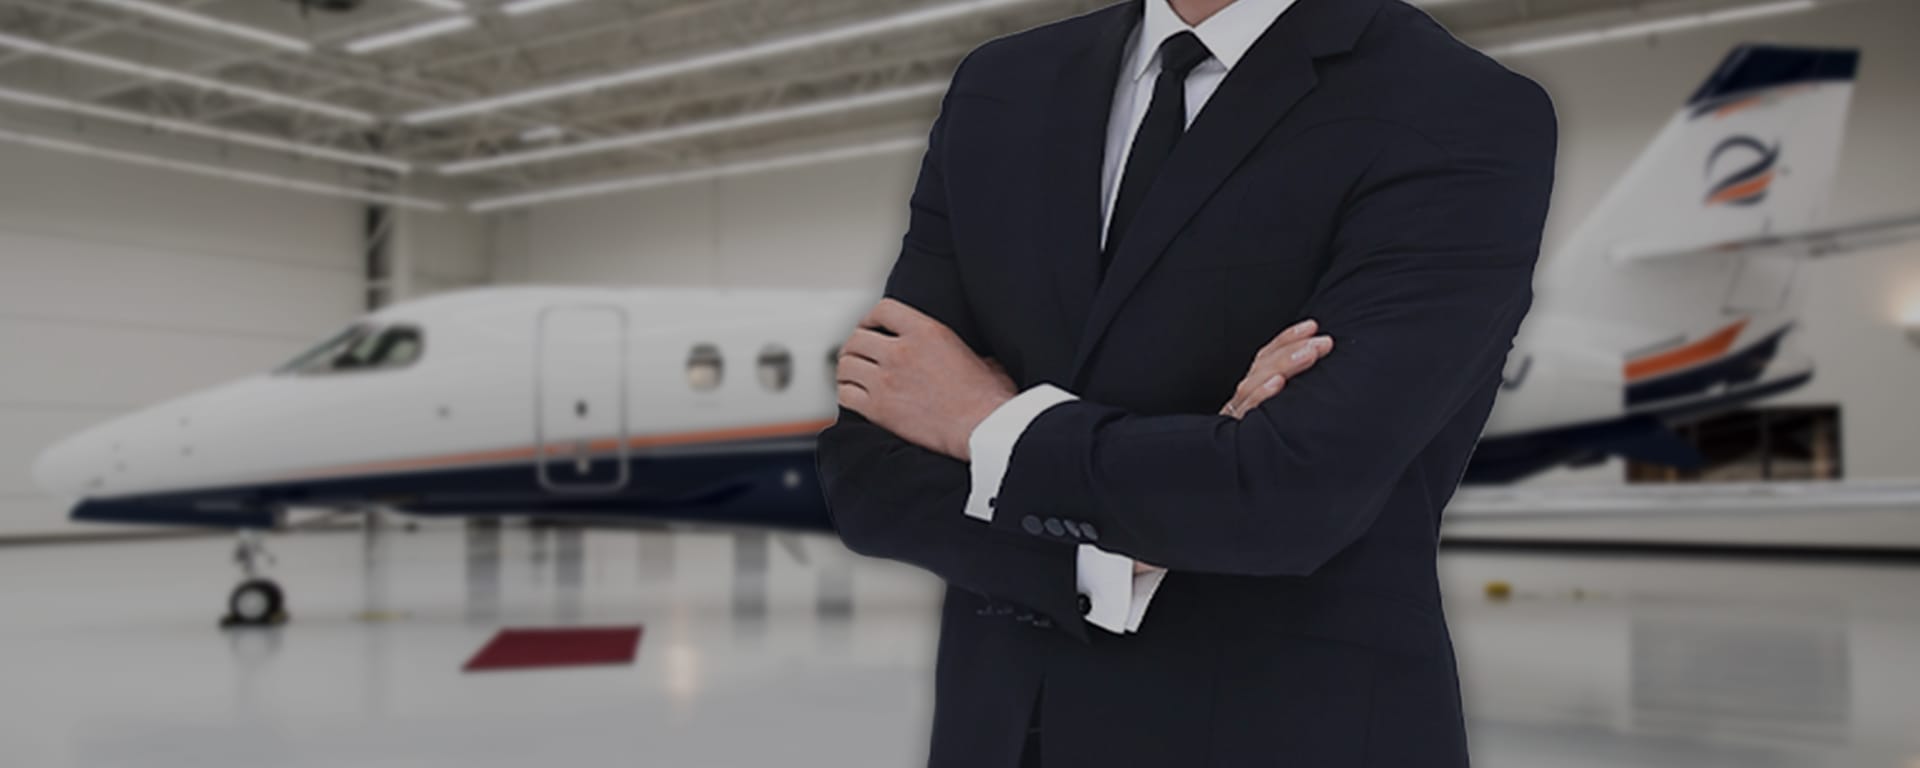 Recrutement aéronautique pour la compagnie aérienne privée Astonjet